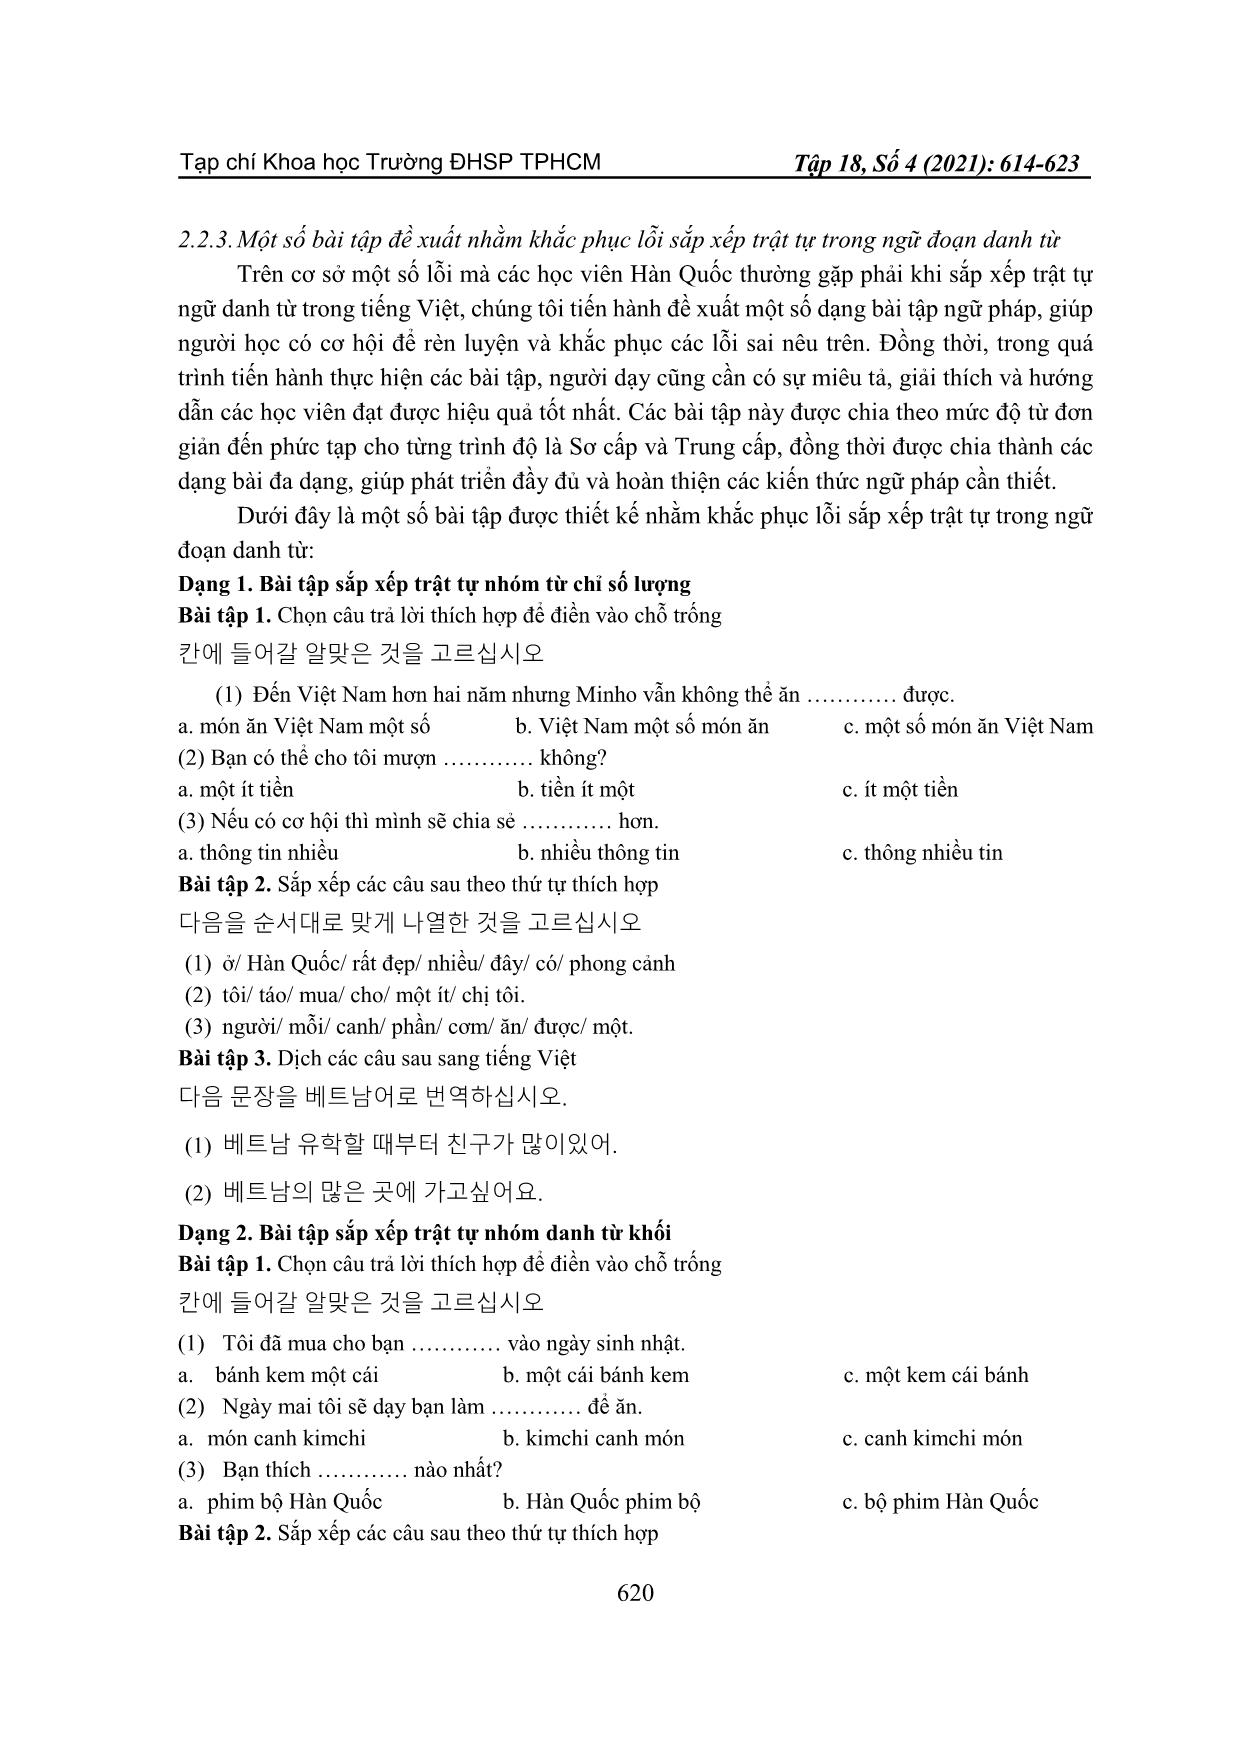 Lỗi sắp xếp trật tự trong ngữ đoạn danh từ của người Hàn quốc học Tiếng Việt trang 7